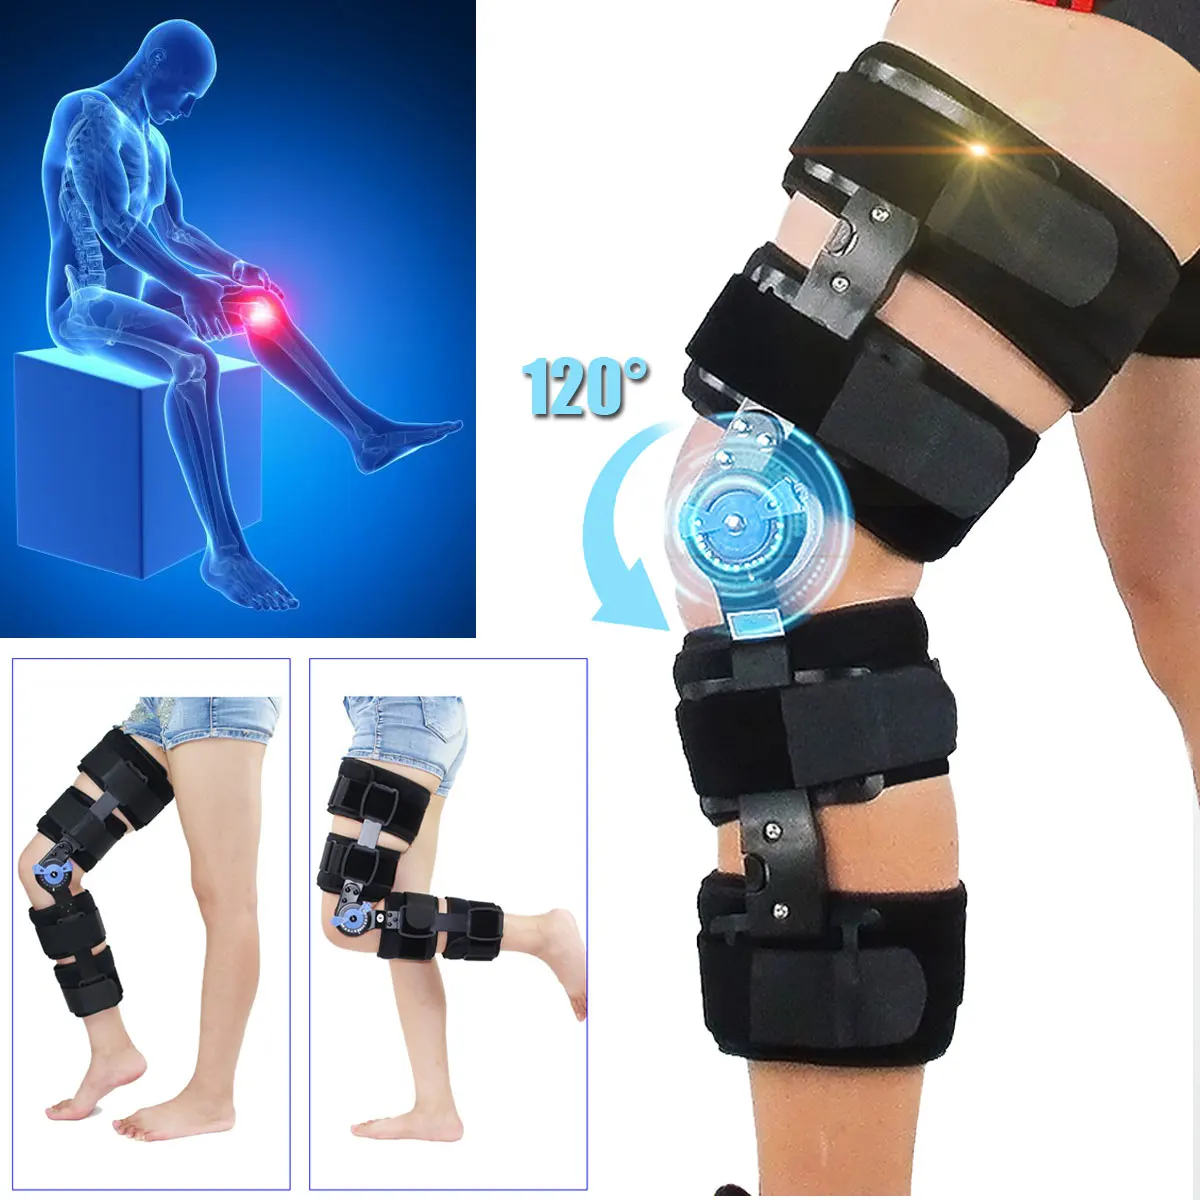 

Orthopedic Knee Pads Brace Adjustable Hinged Leg Knee Support Band Knee Braces Protector Powerleg Bone Orthosis Ligament Care